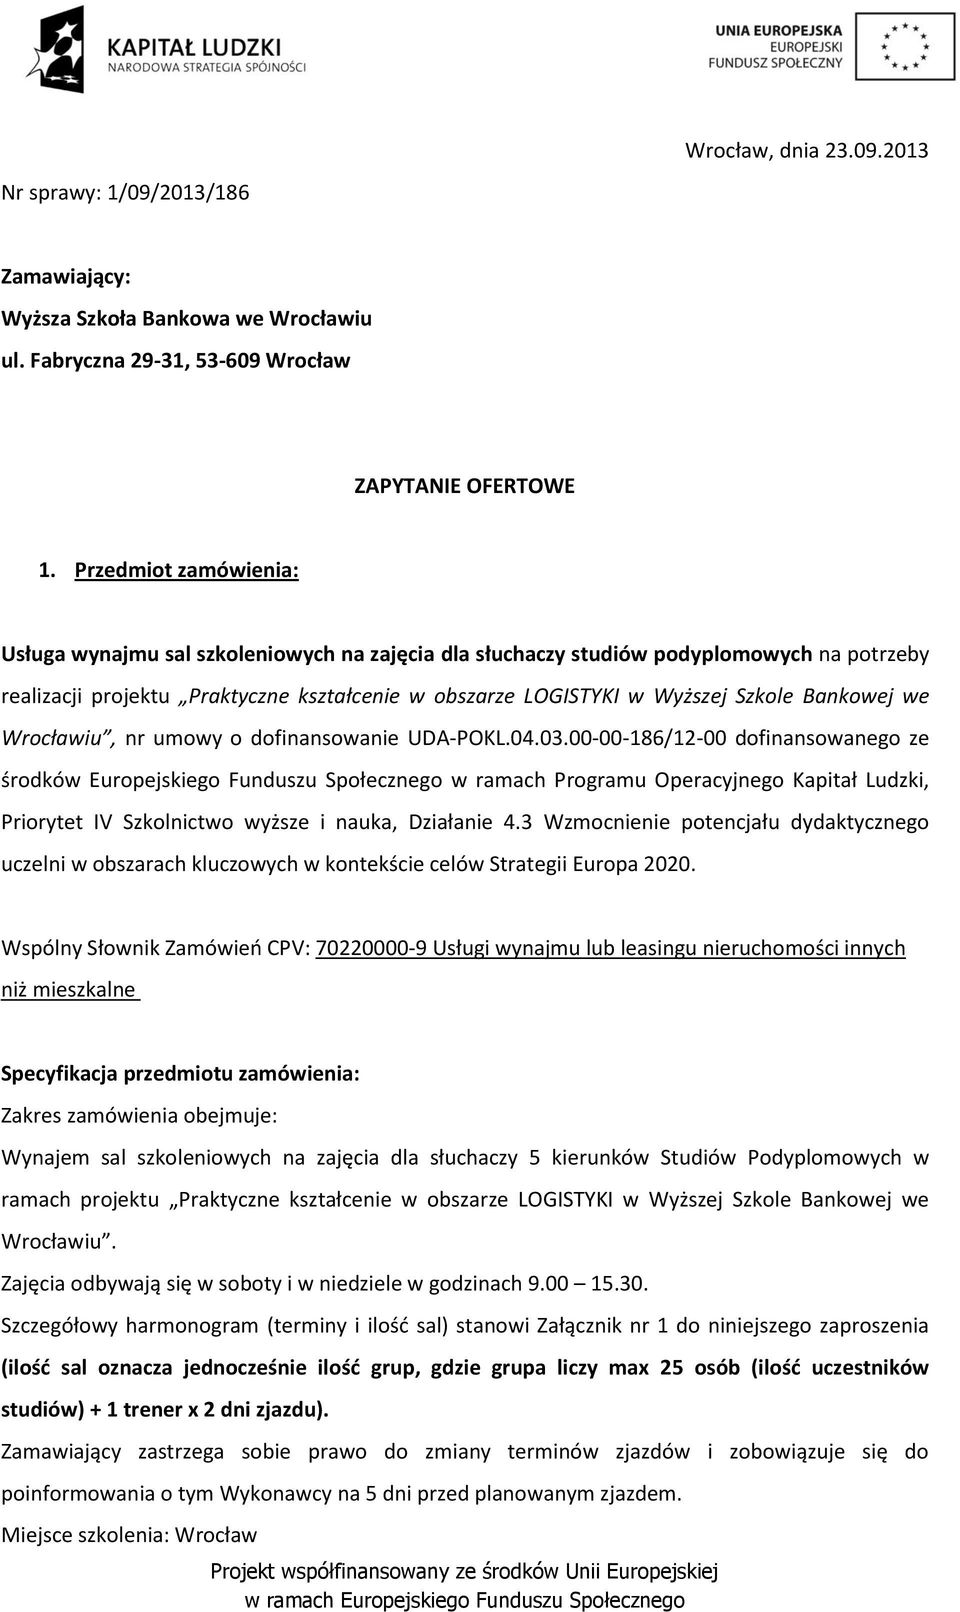 Bankowej we Wrocławiu, nr umowy o dofinansowanie UDA-POKL.04.03.